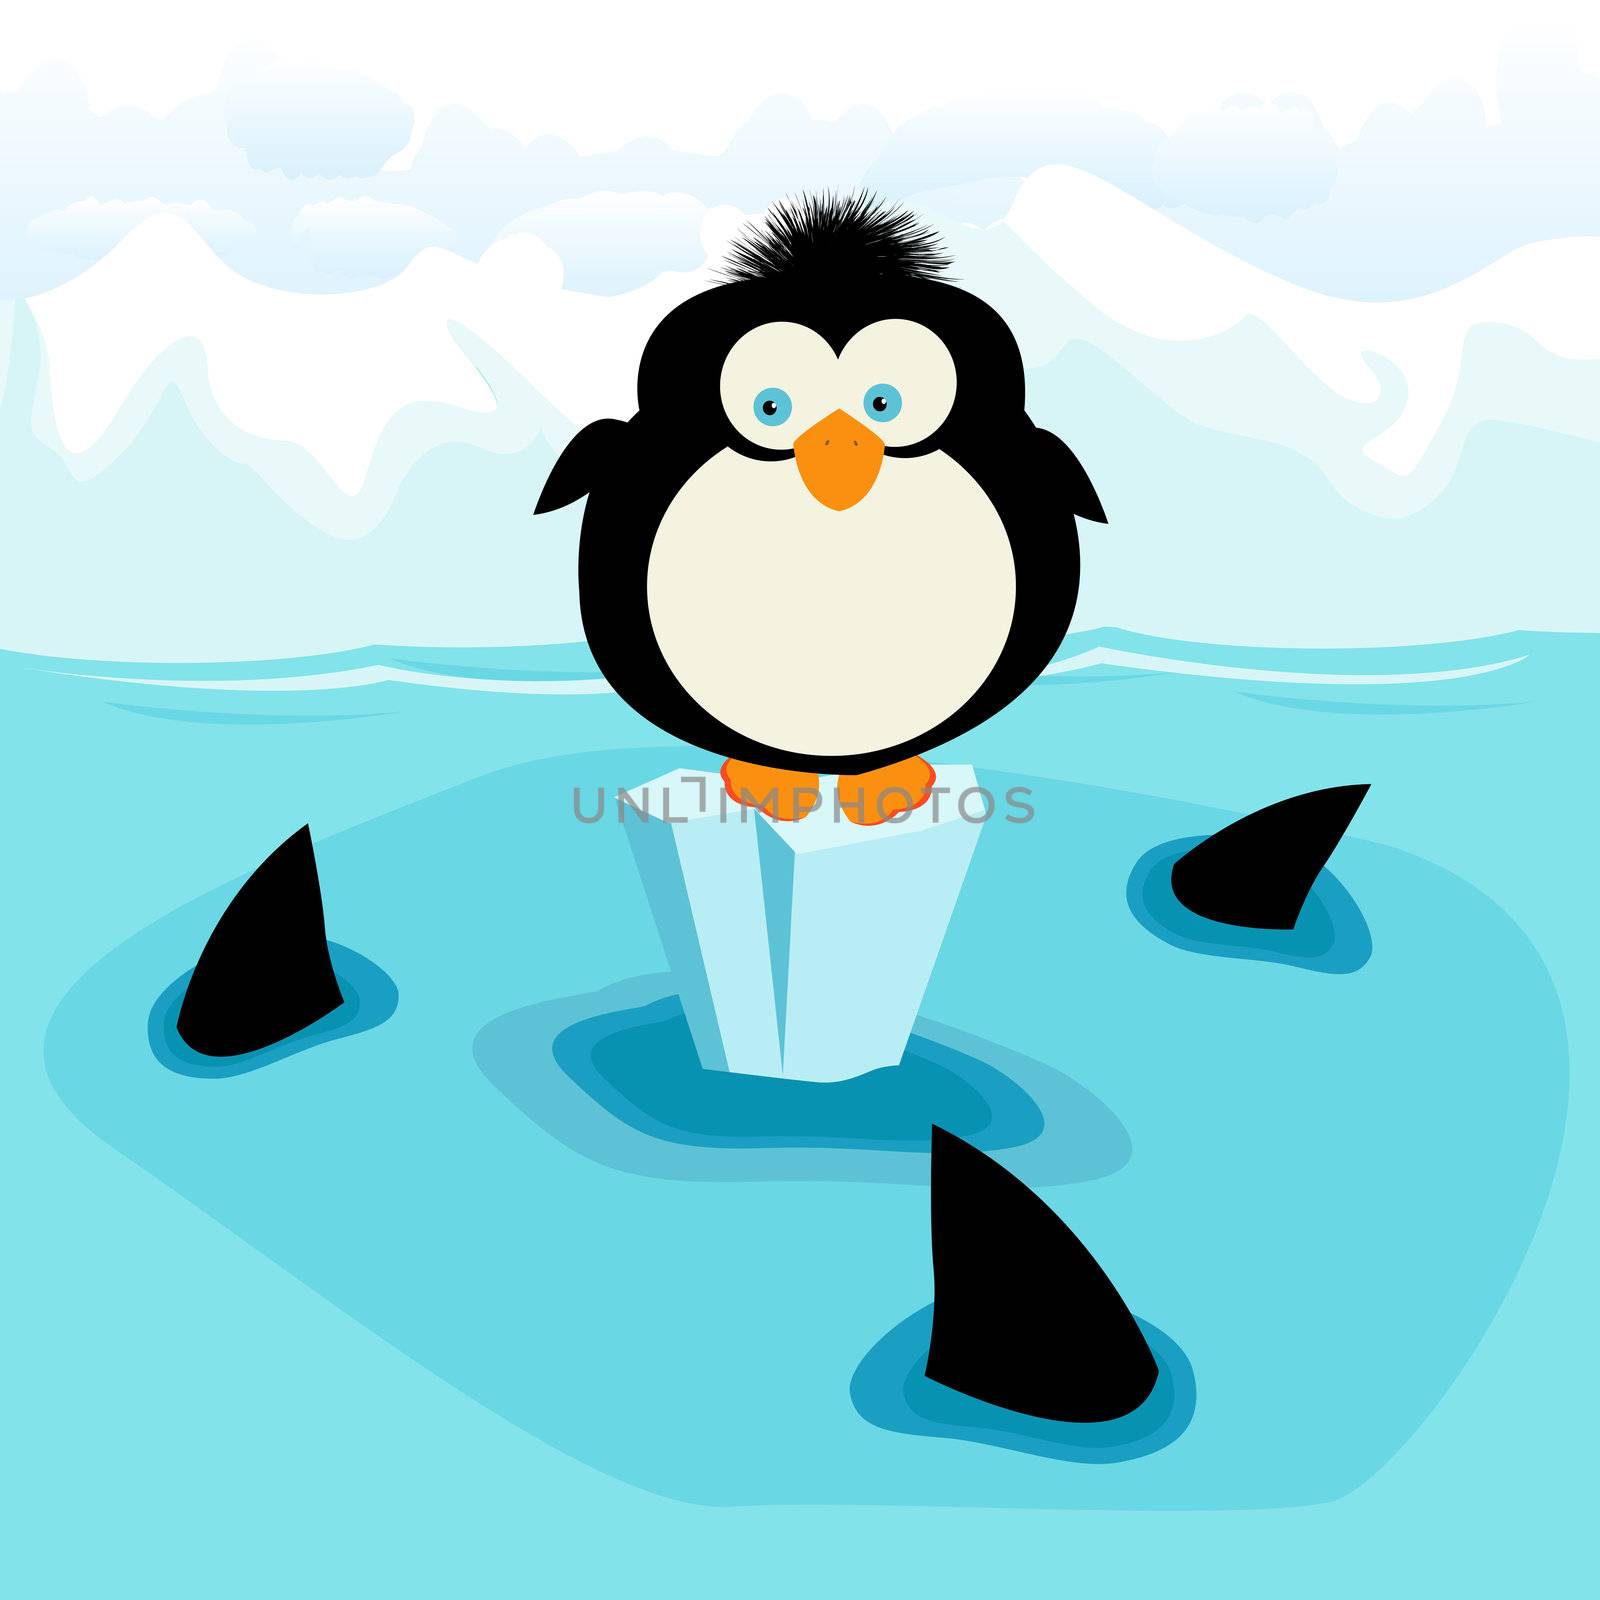 Penguin by Lirch